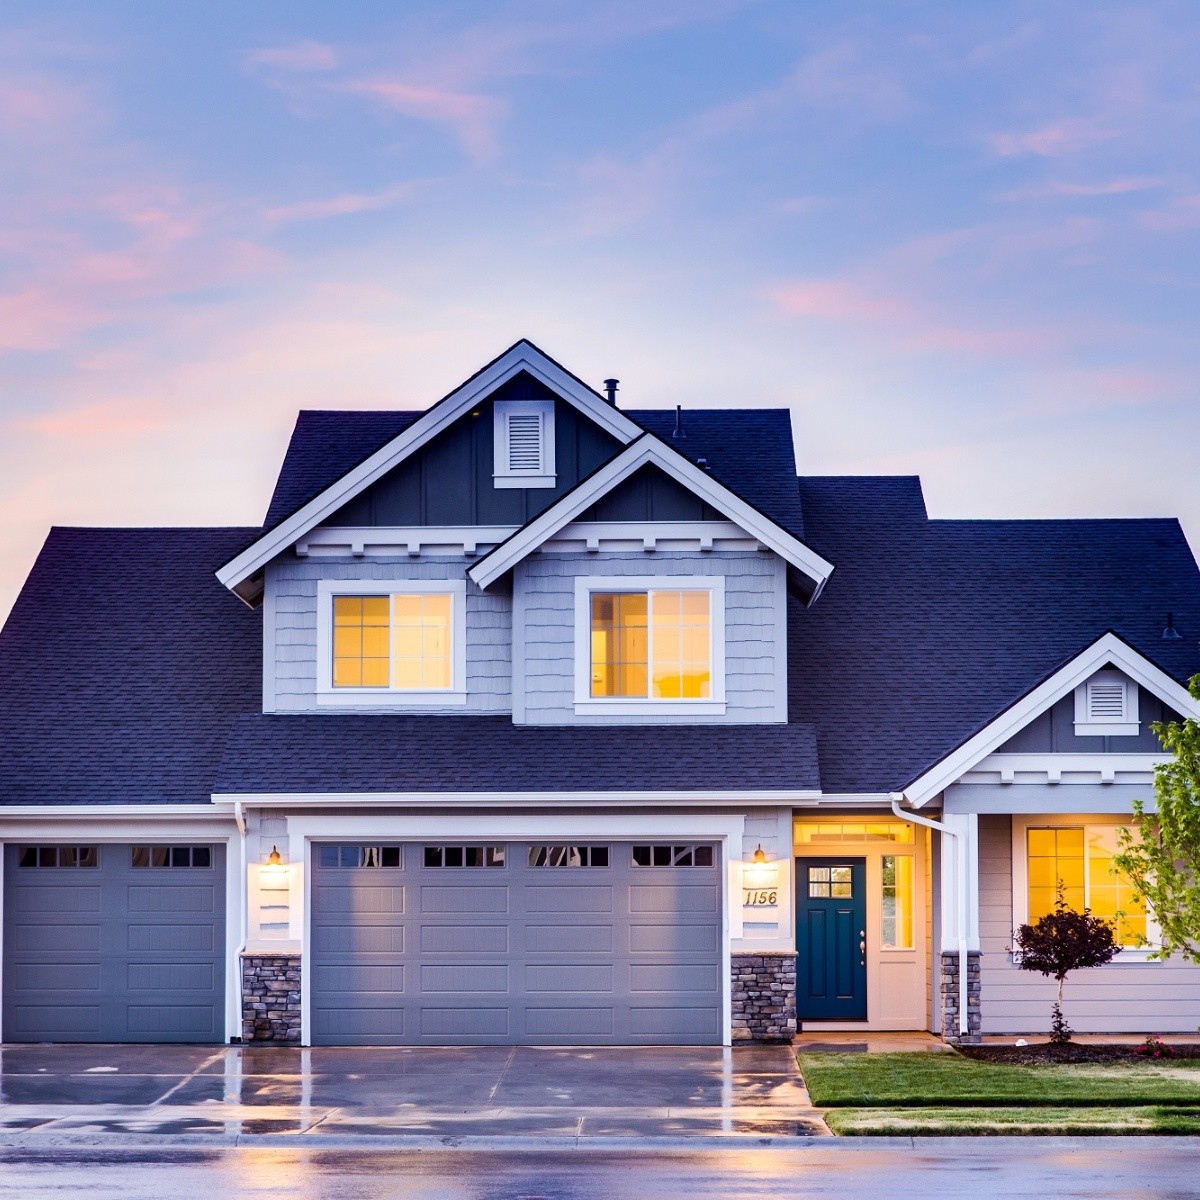 conoce estos 5 consejos recomendados por expertos para cumplir el sueño de adquirir una casa